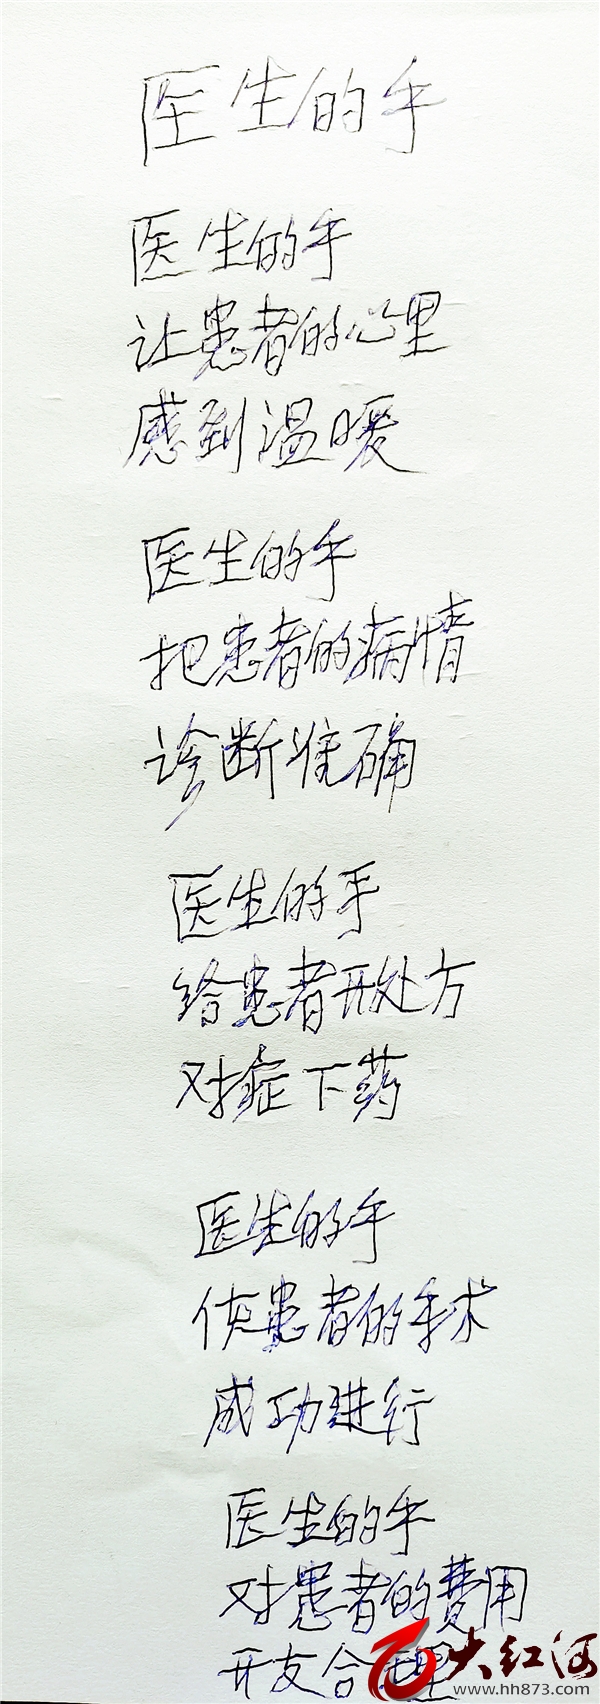 85岁老者徐培俊写诗赞医生  医患关系原来可以如此美好